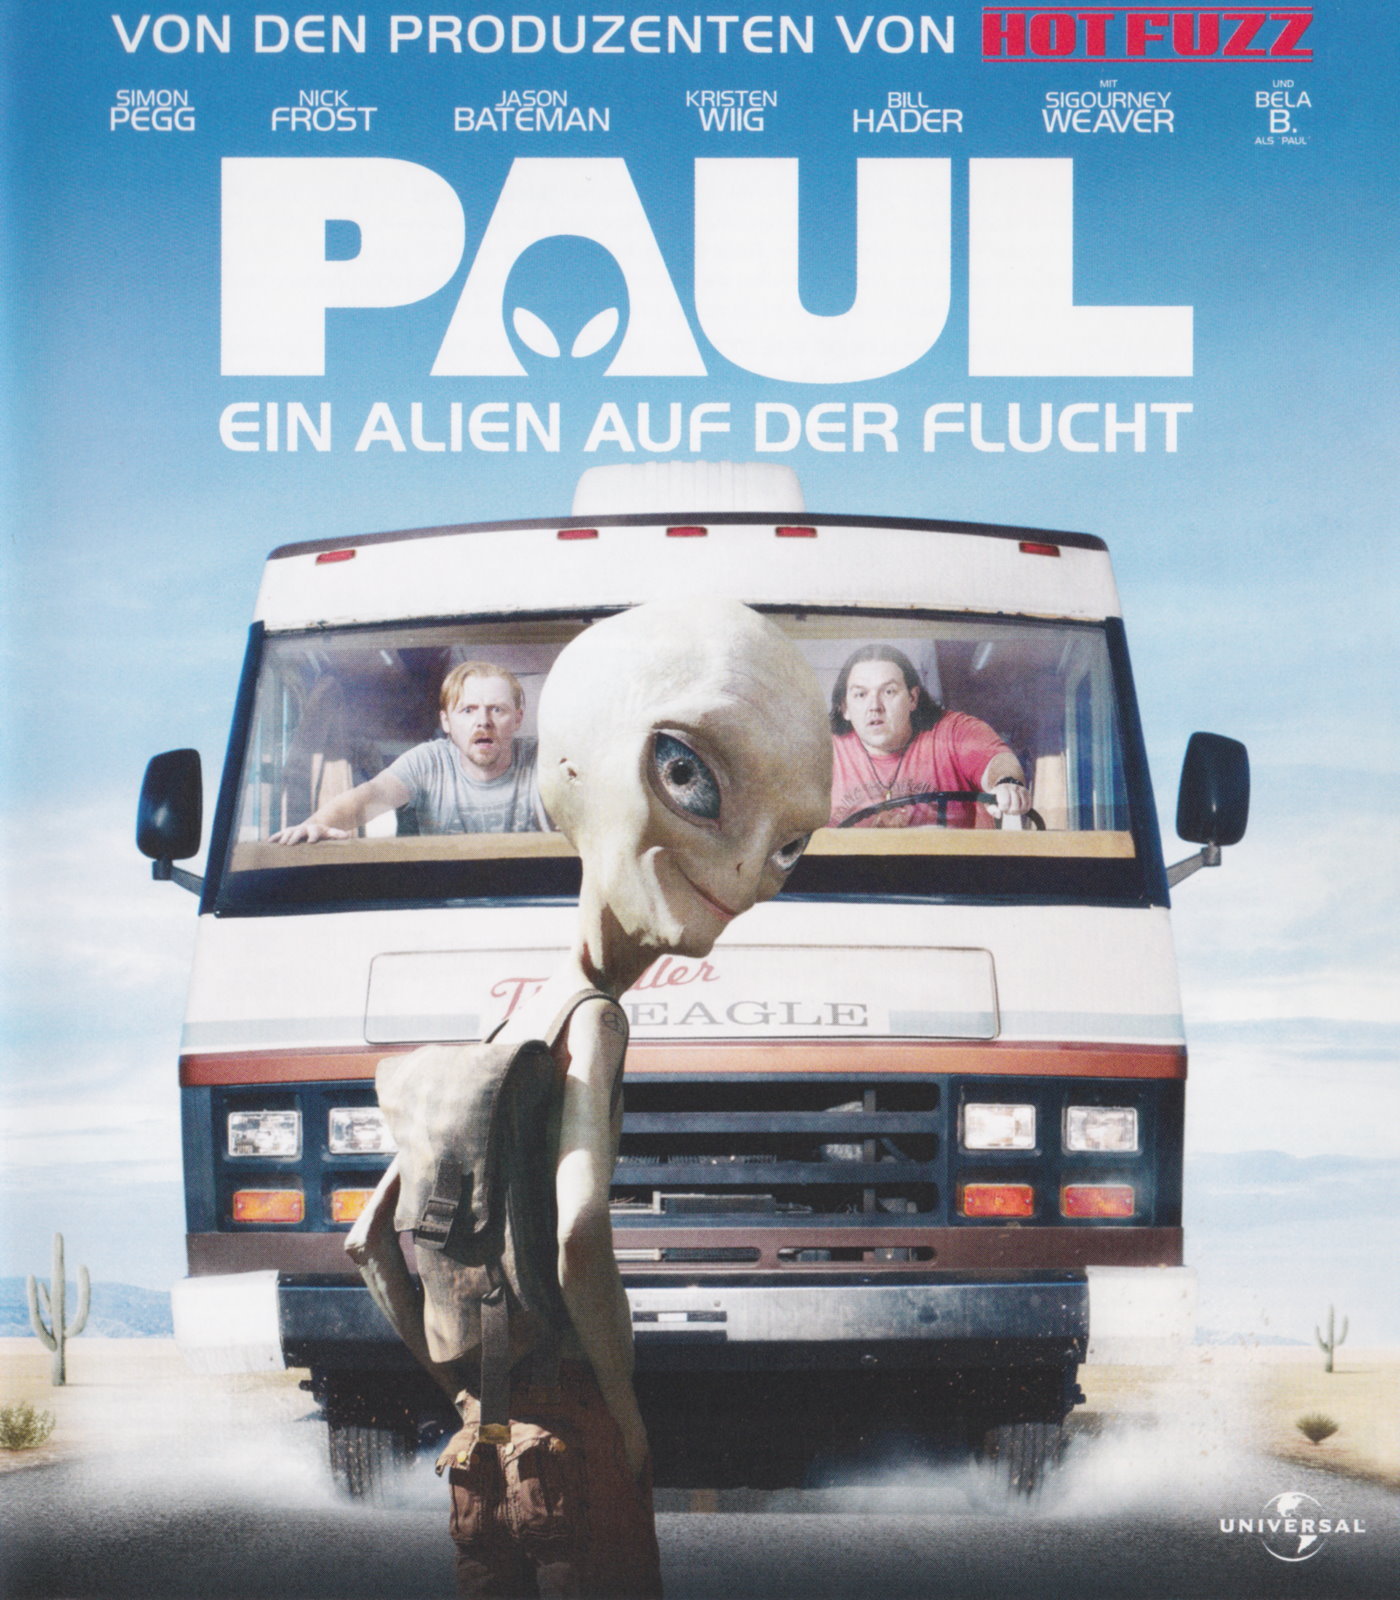 Cover - Paul - Ein Alien auf der Flucht.jpg